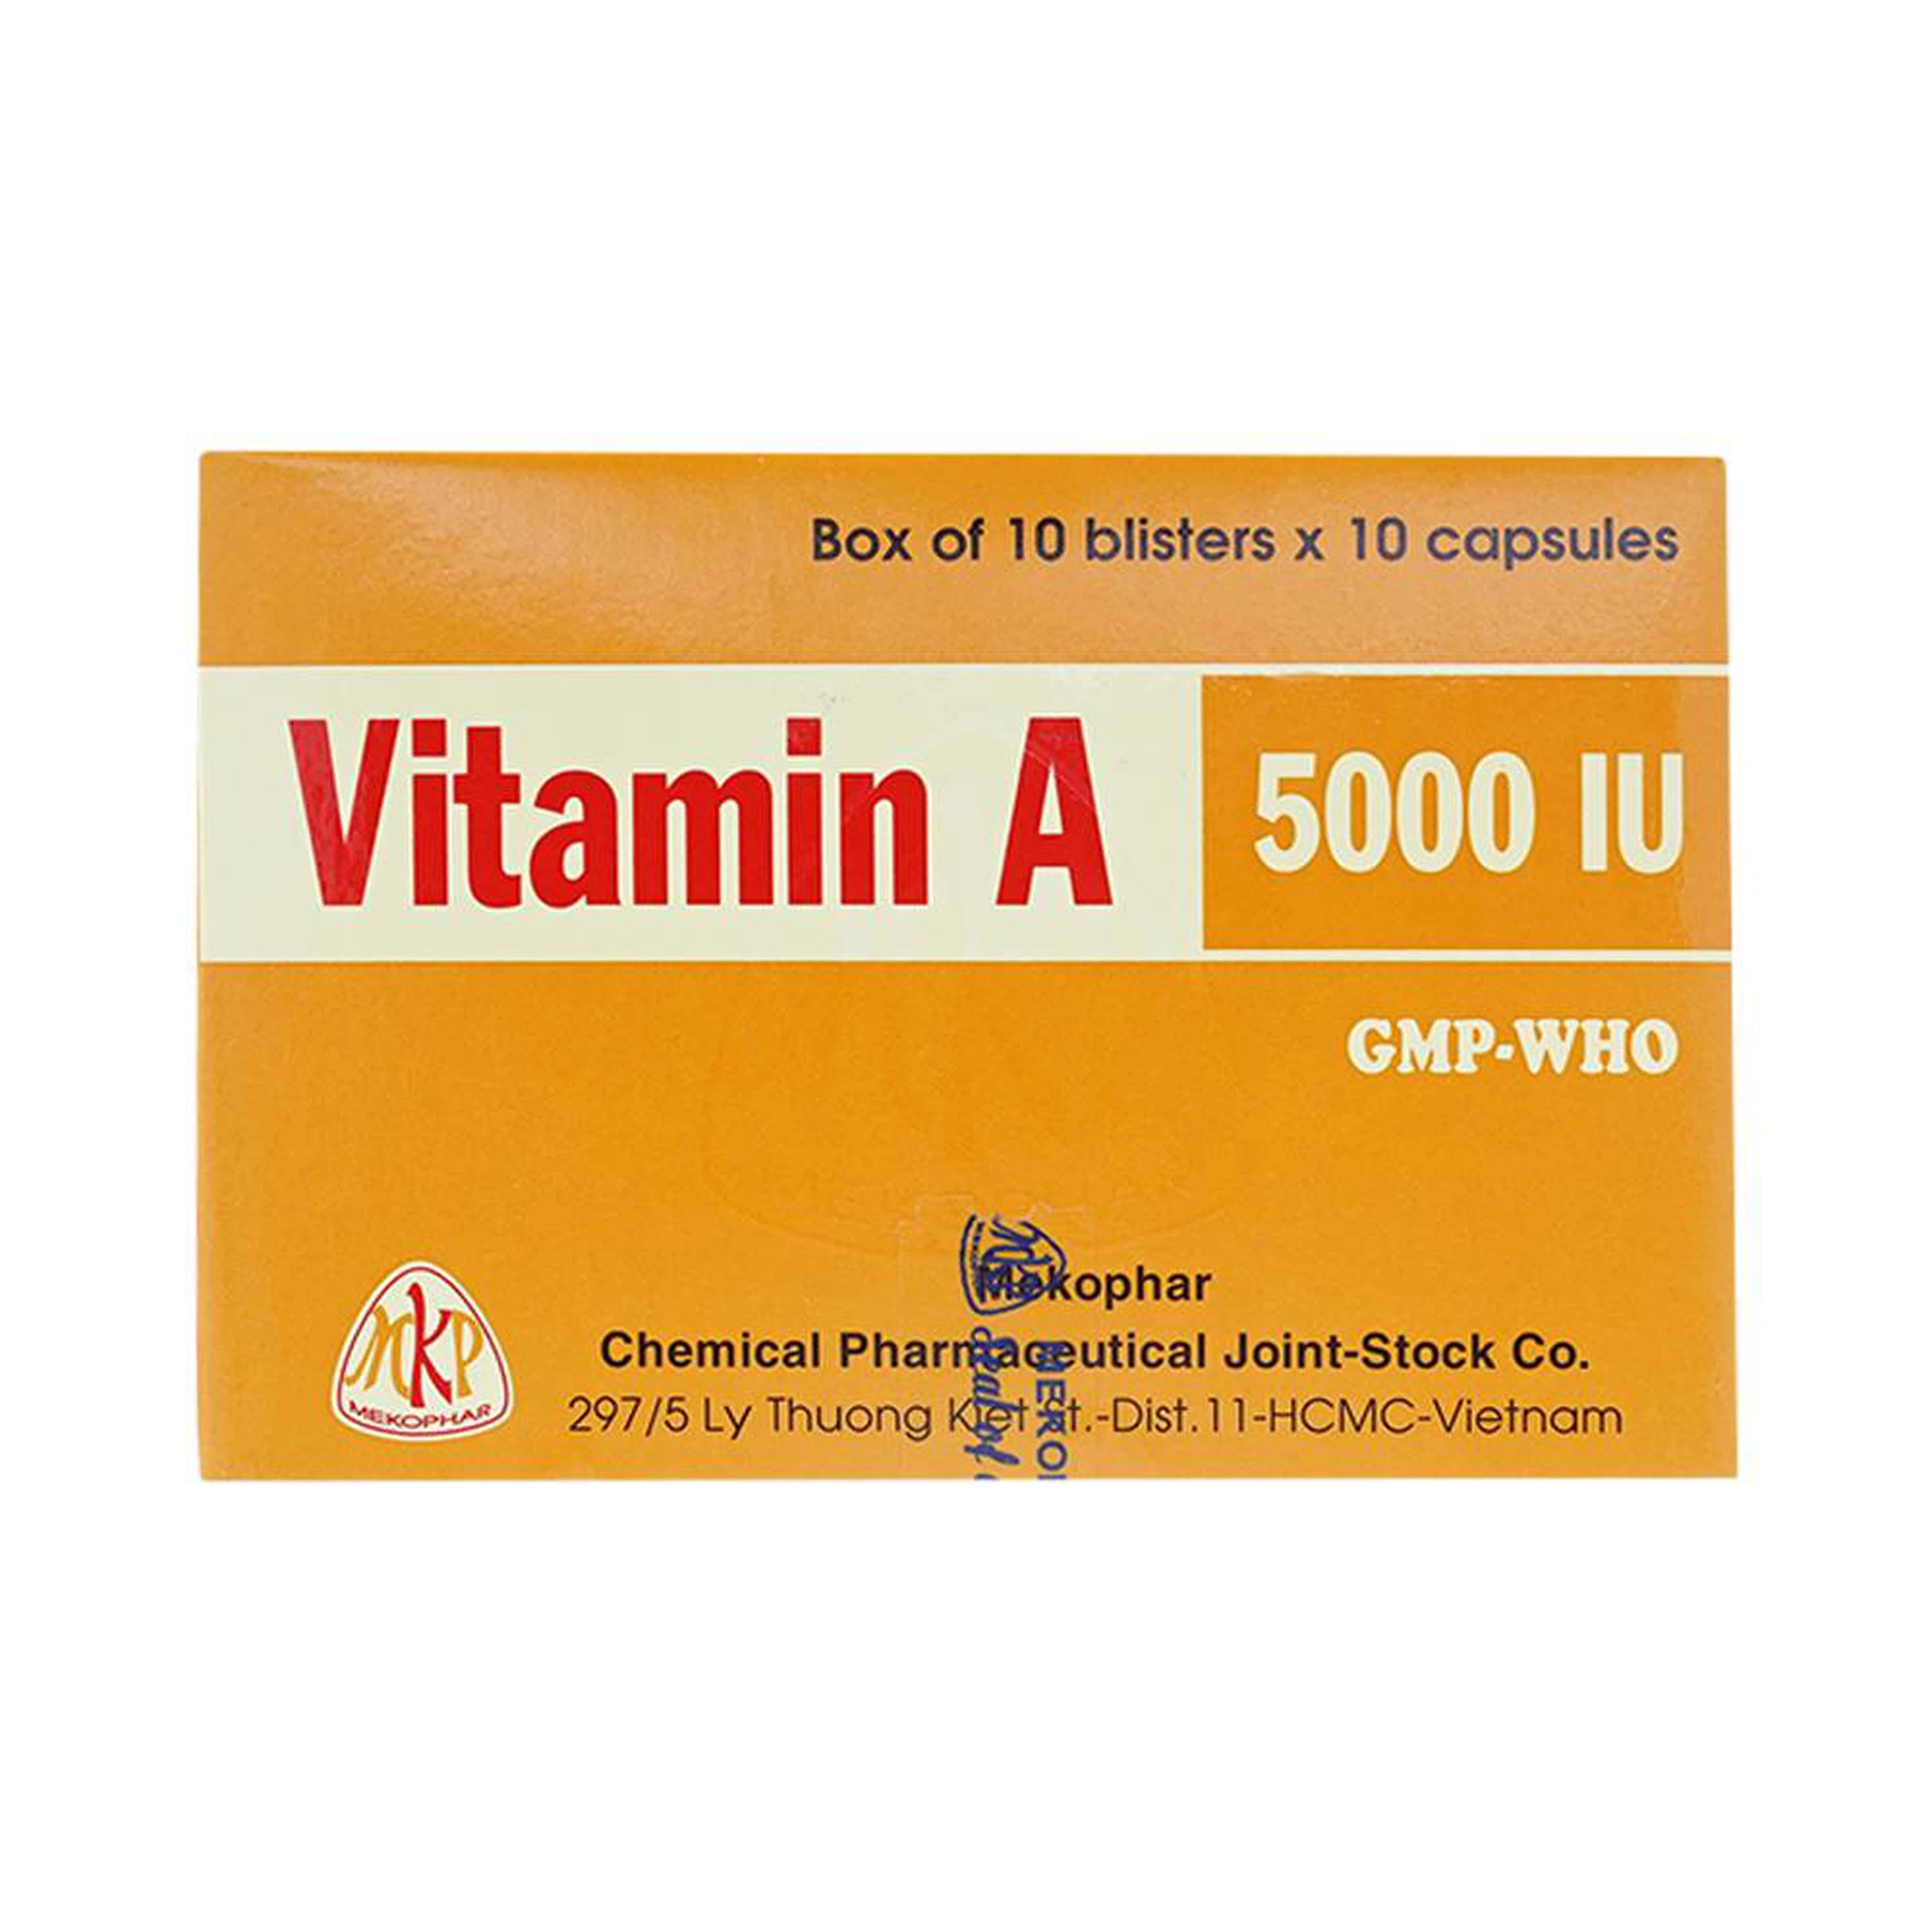 Thuốc Vitamin A 5000 IU Mekophar điều trị thiếu Vitamin A, bổ sung cho người bệnh gan (10 vỉ x 10 viên)